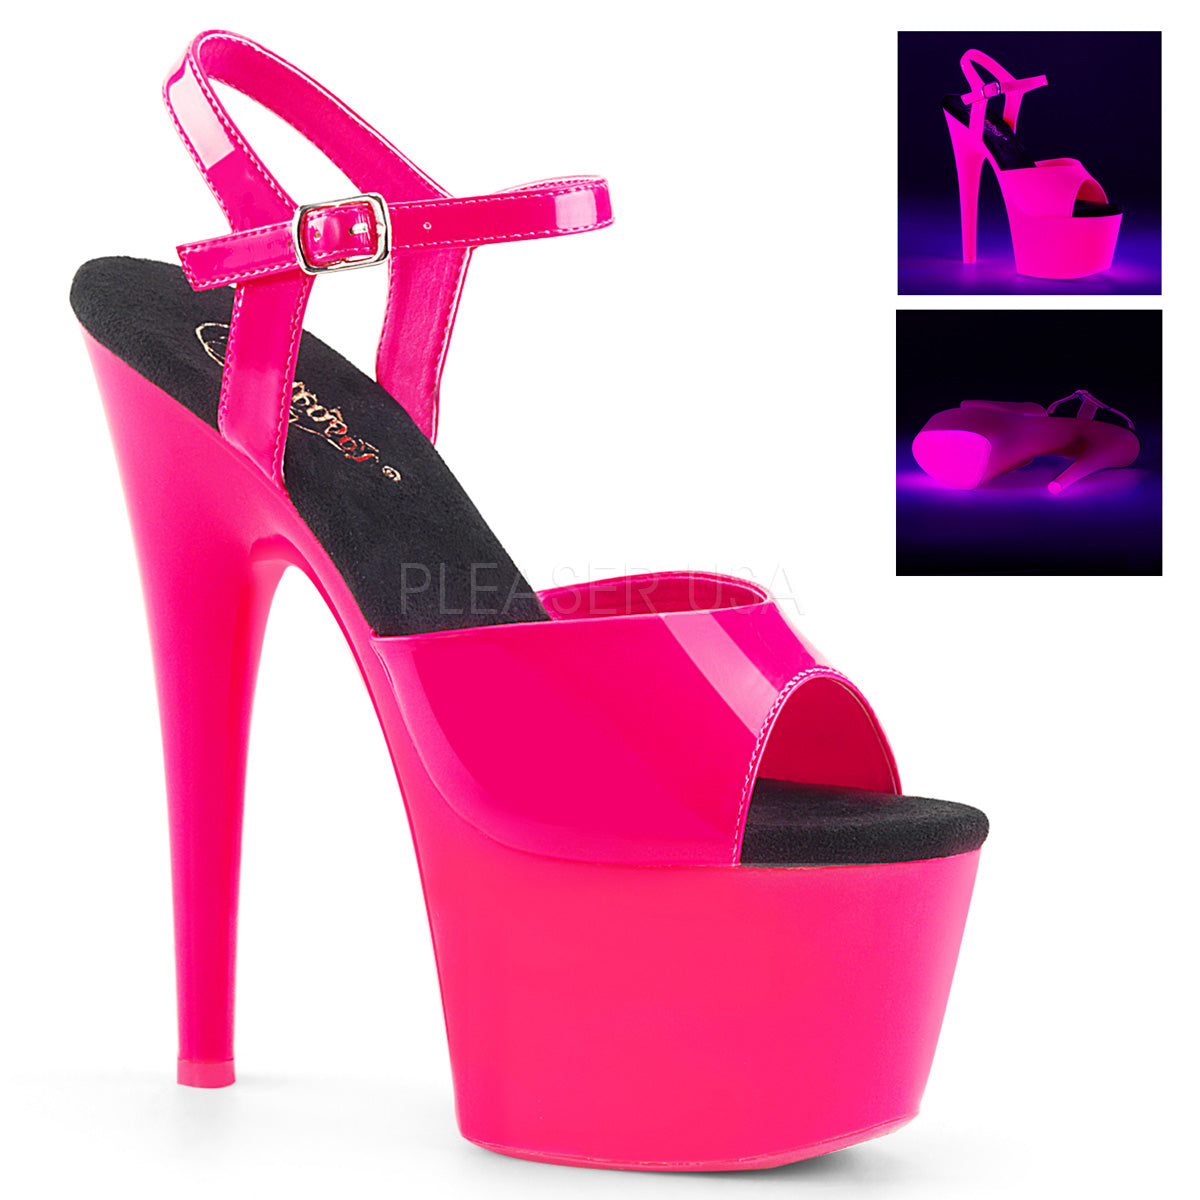 7" Heel ADORE-709UV Neon Hot Pink